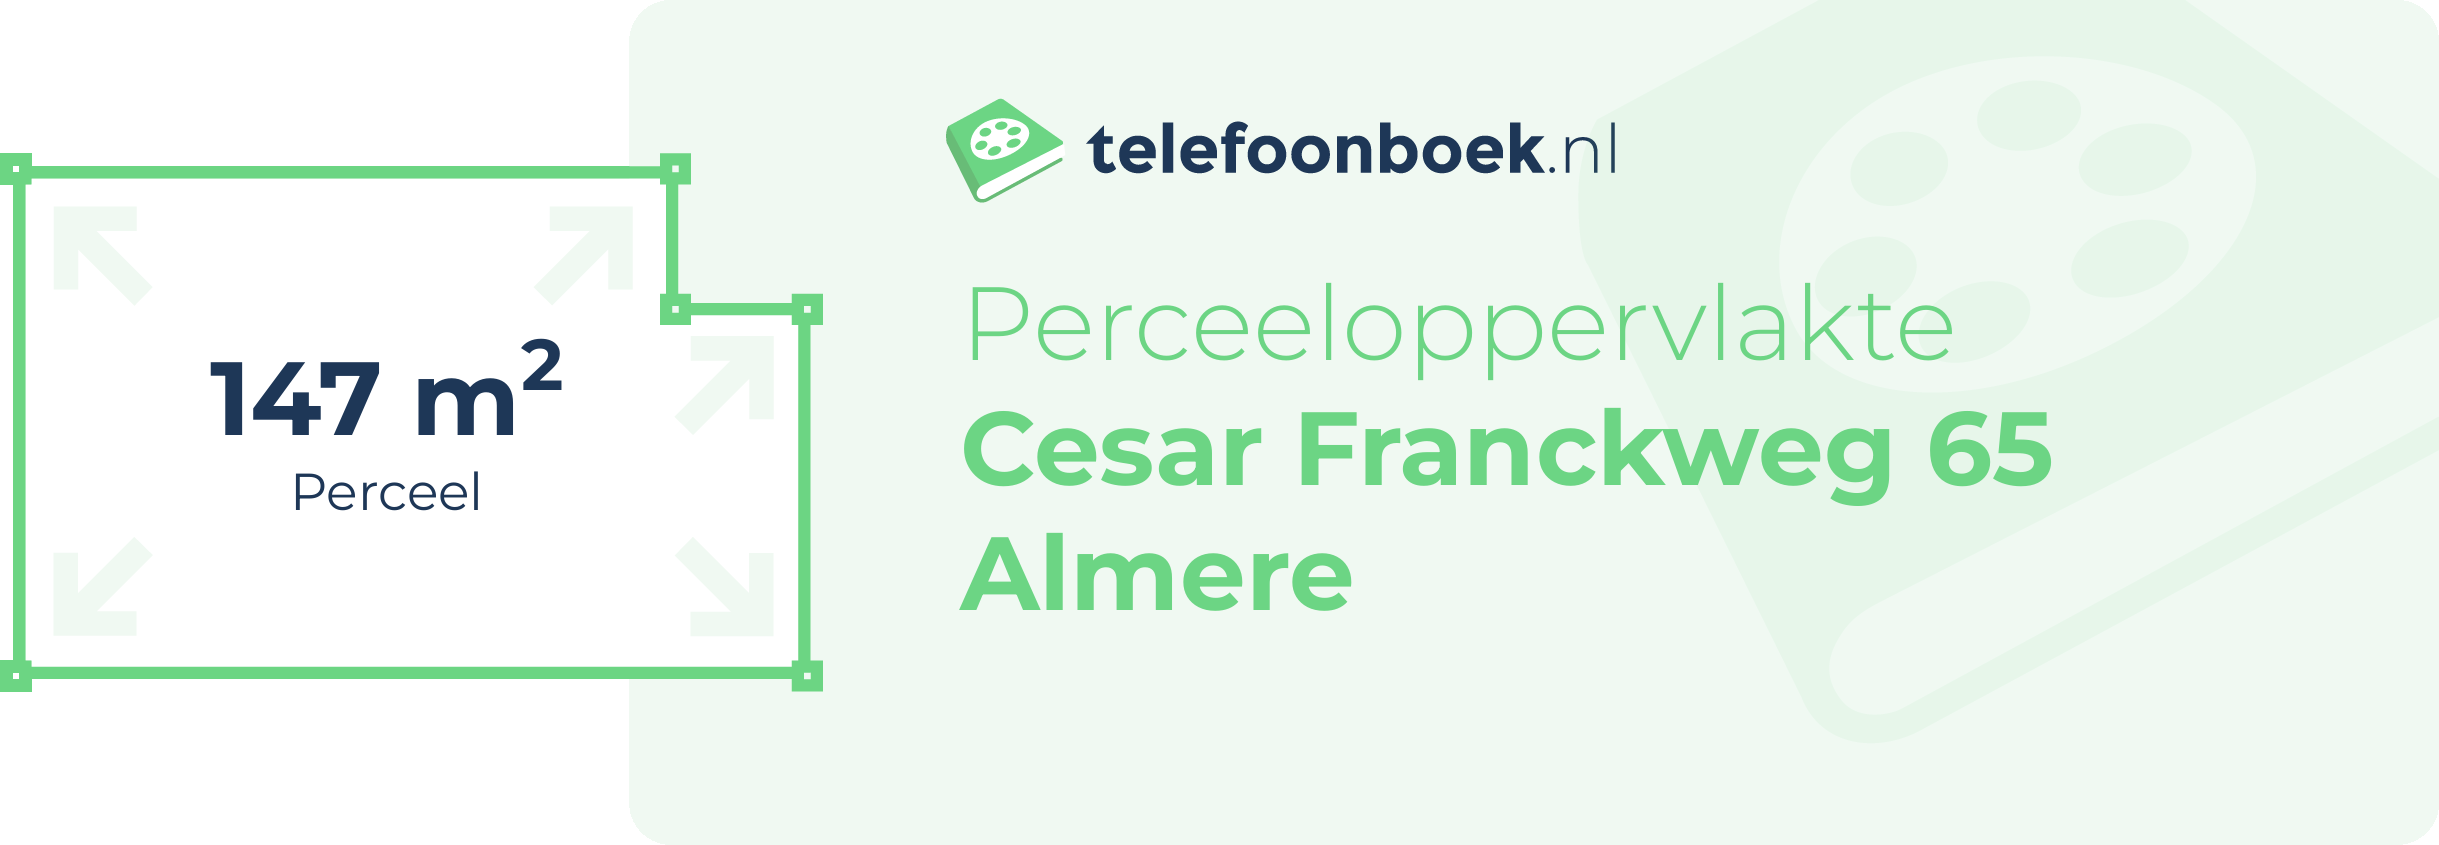 Perceeloppervlakte Cesar Franckweg 65 Almere